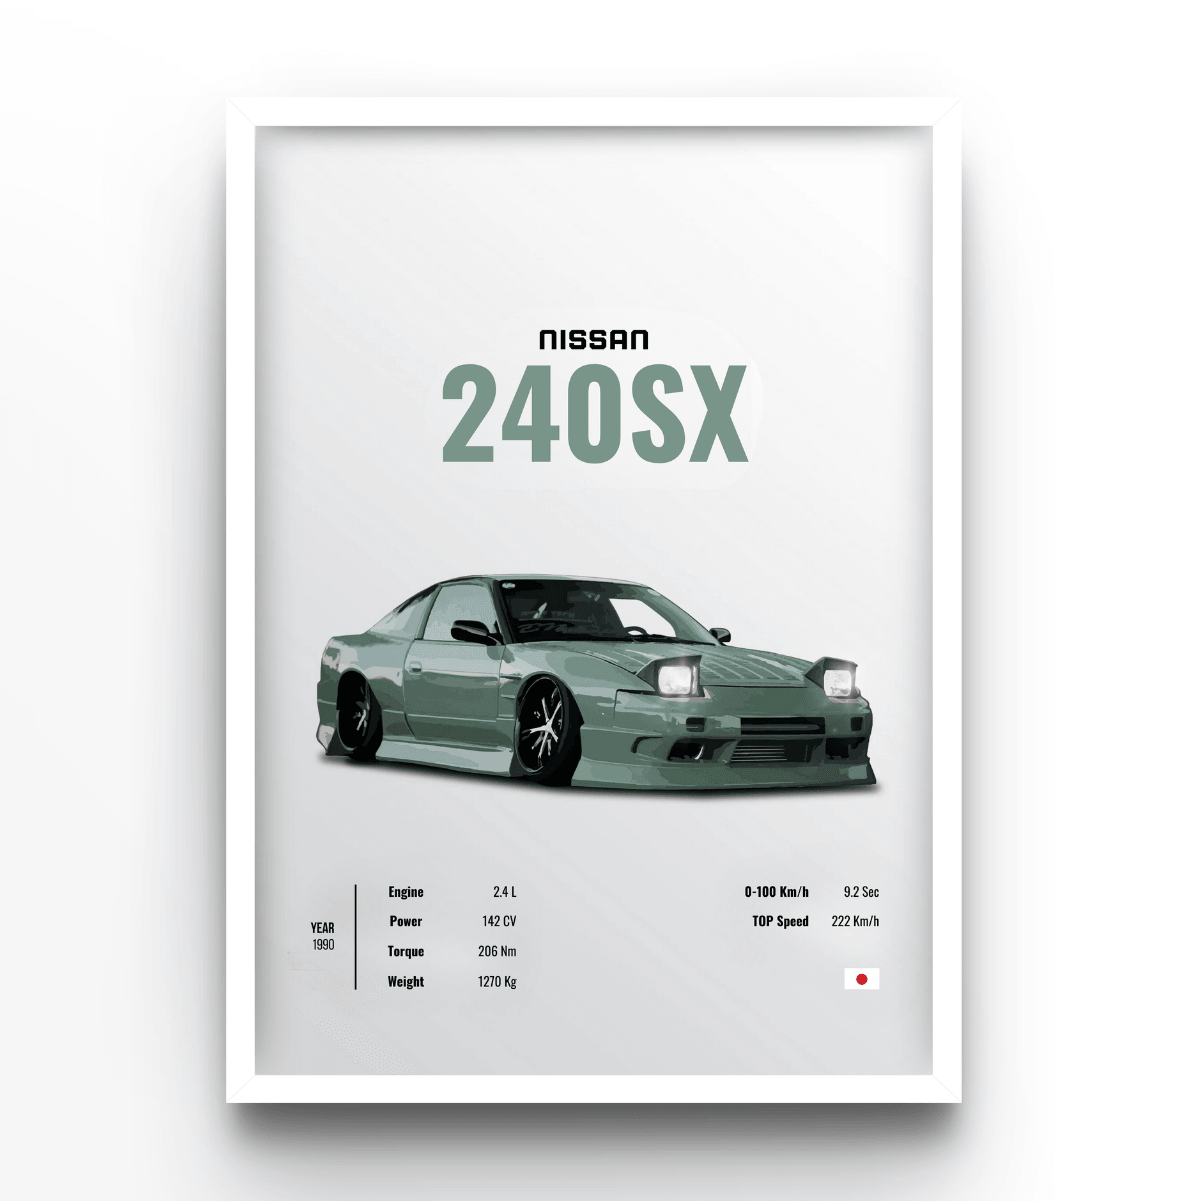 Nissan 240SX - A4, A3, A2 Posters Base - Poster Print Shop / Art Prints / PostersBase